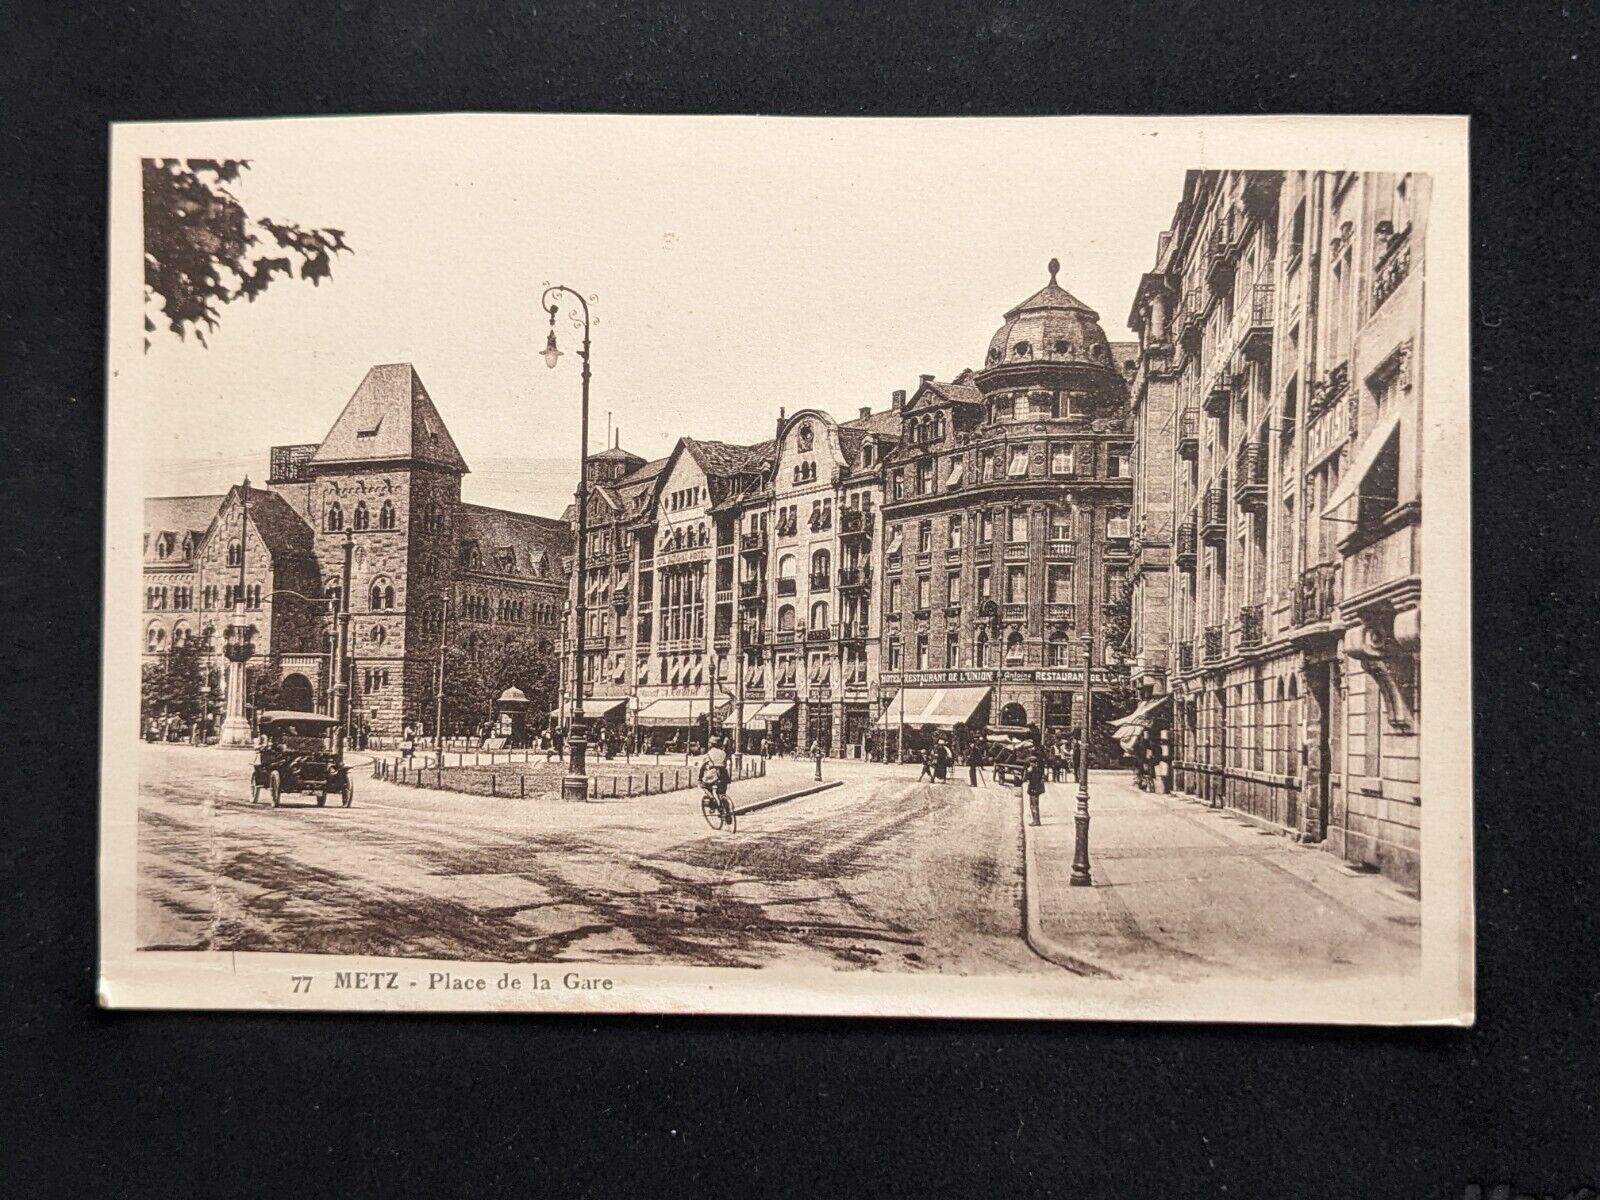 Metz Place de la Gare France Antique Postcard Street View